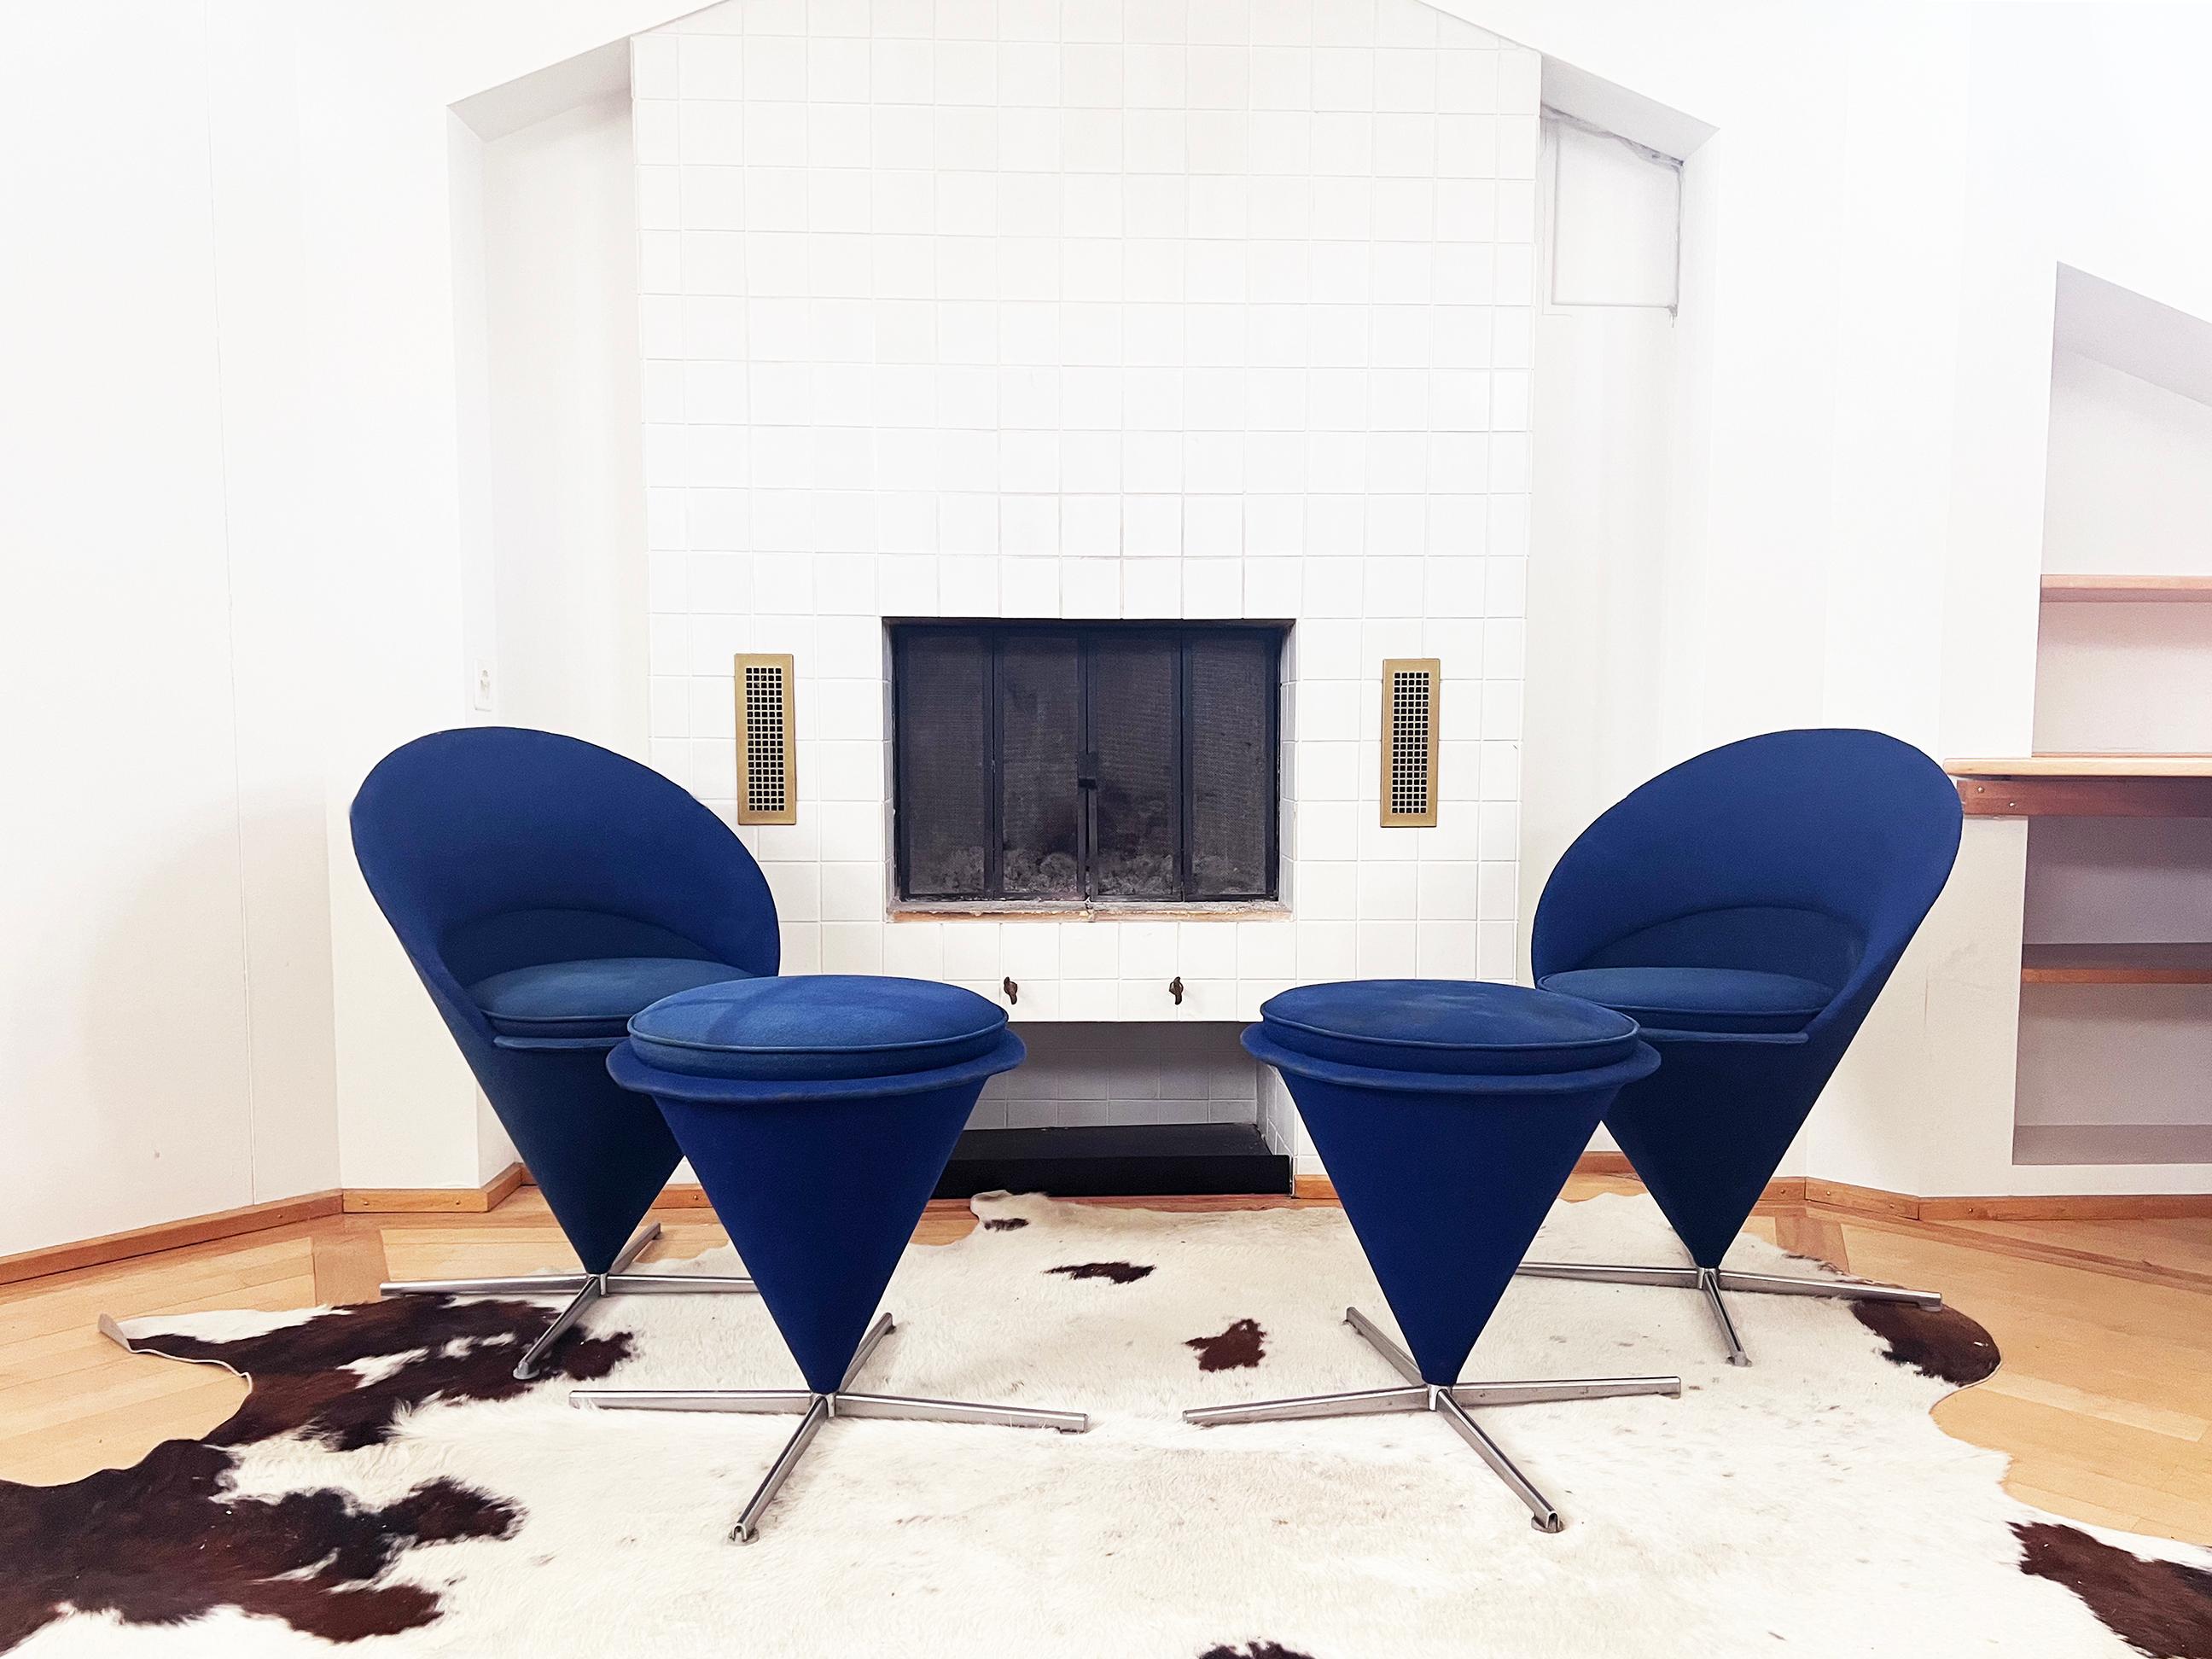 Original Verner Panton Cone Chair and Ottoman, produit par Vitra.  Magnifique ensemble.

Il s'agit de la chaise emblématique de Verner Panton en forme de cône, recouverte de laine bleue et dotée d'une base pivotante en acier à quatre passages avec